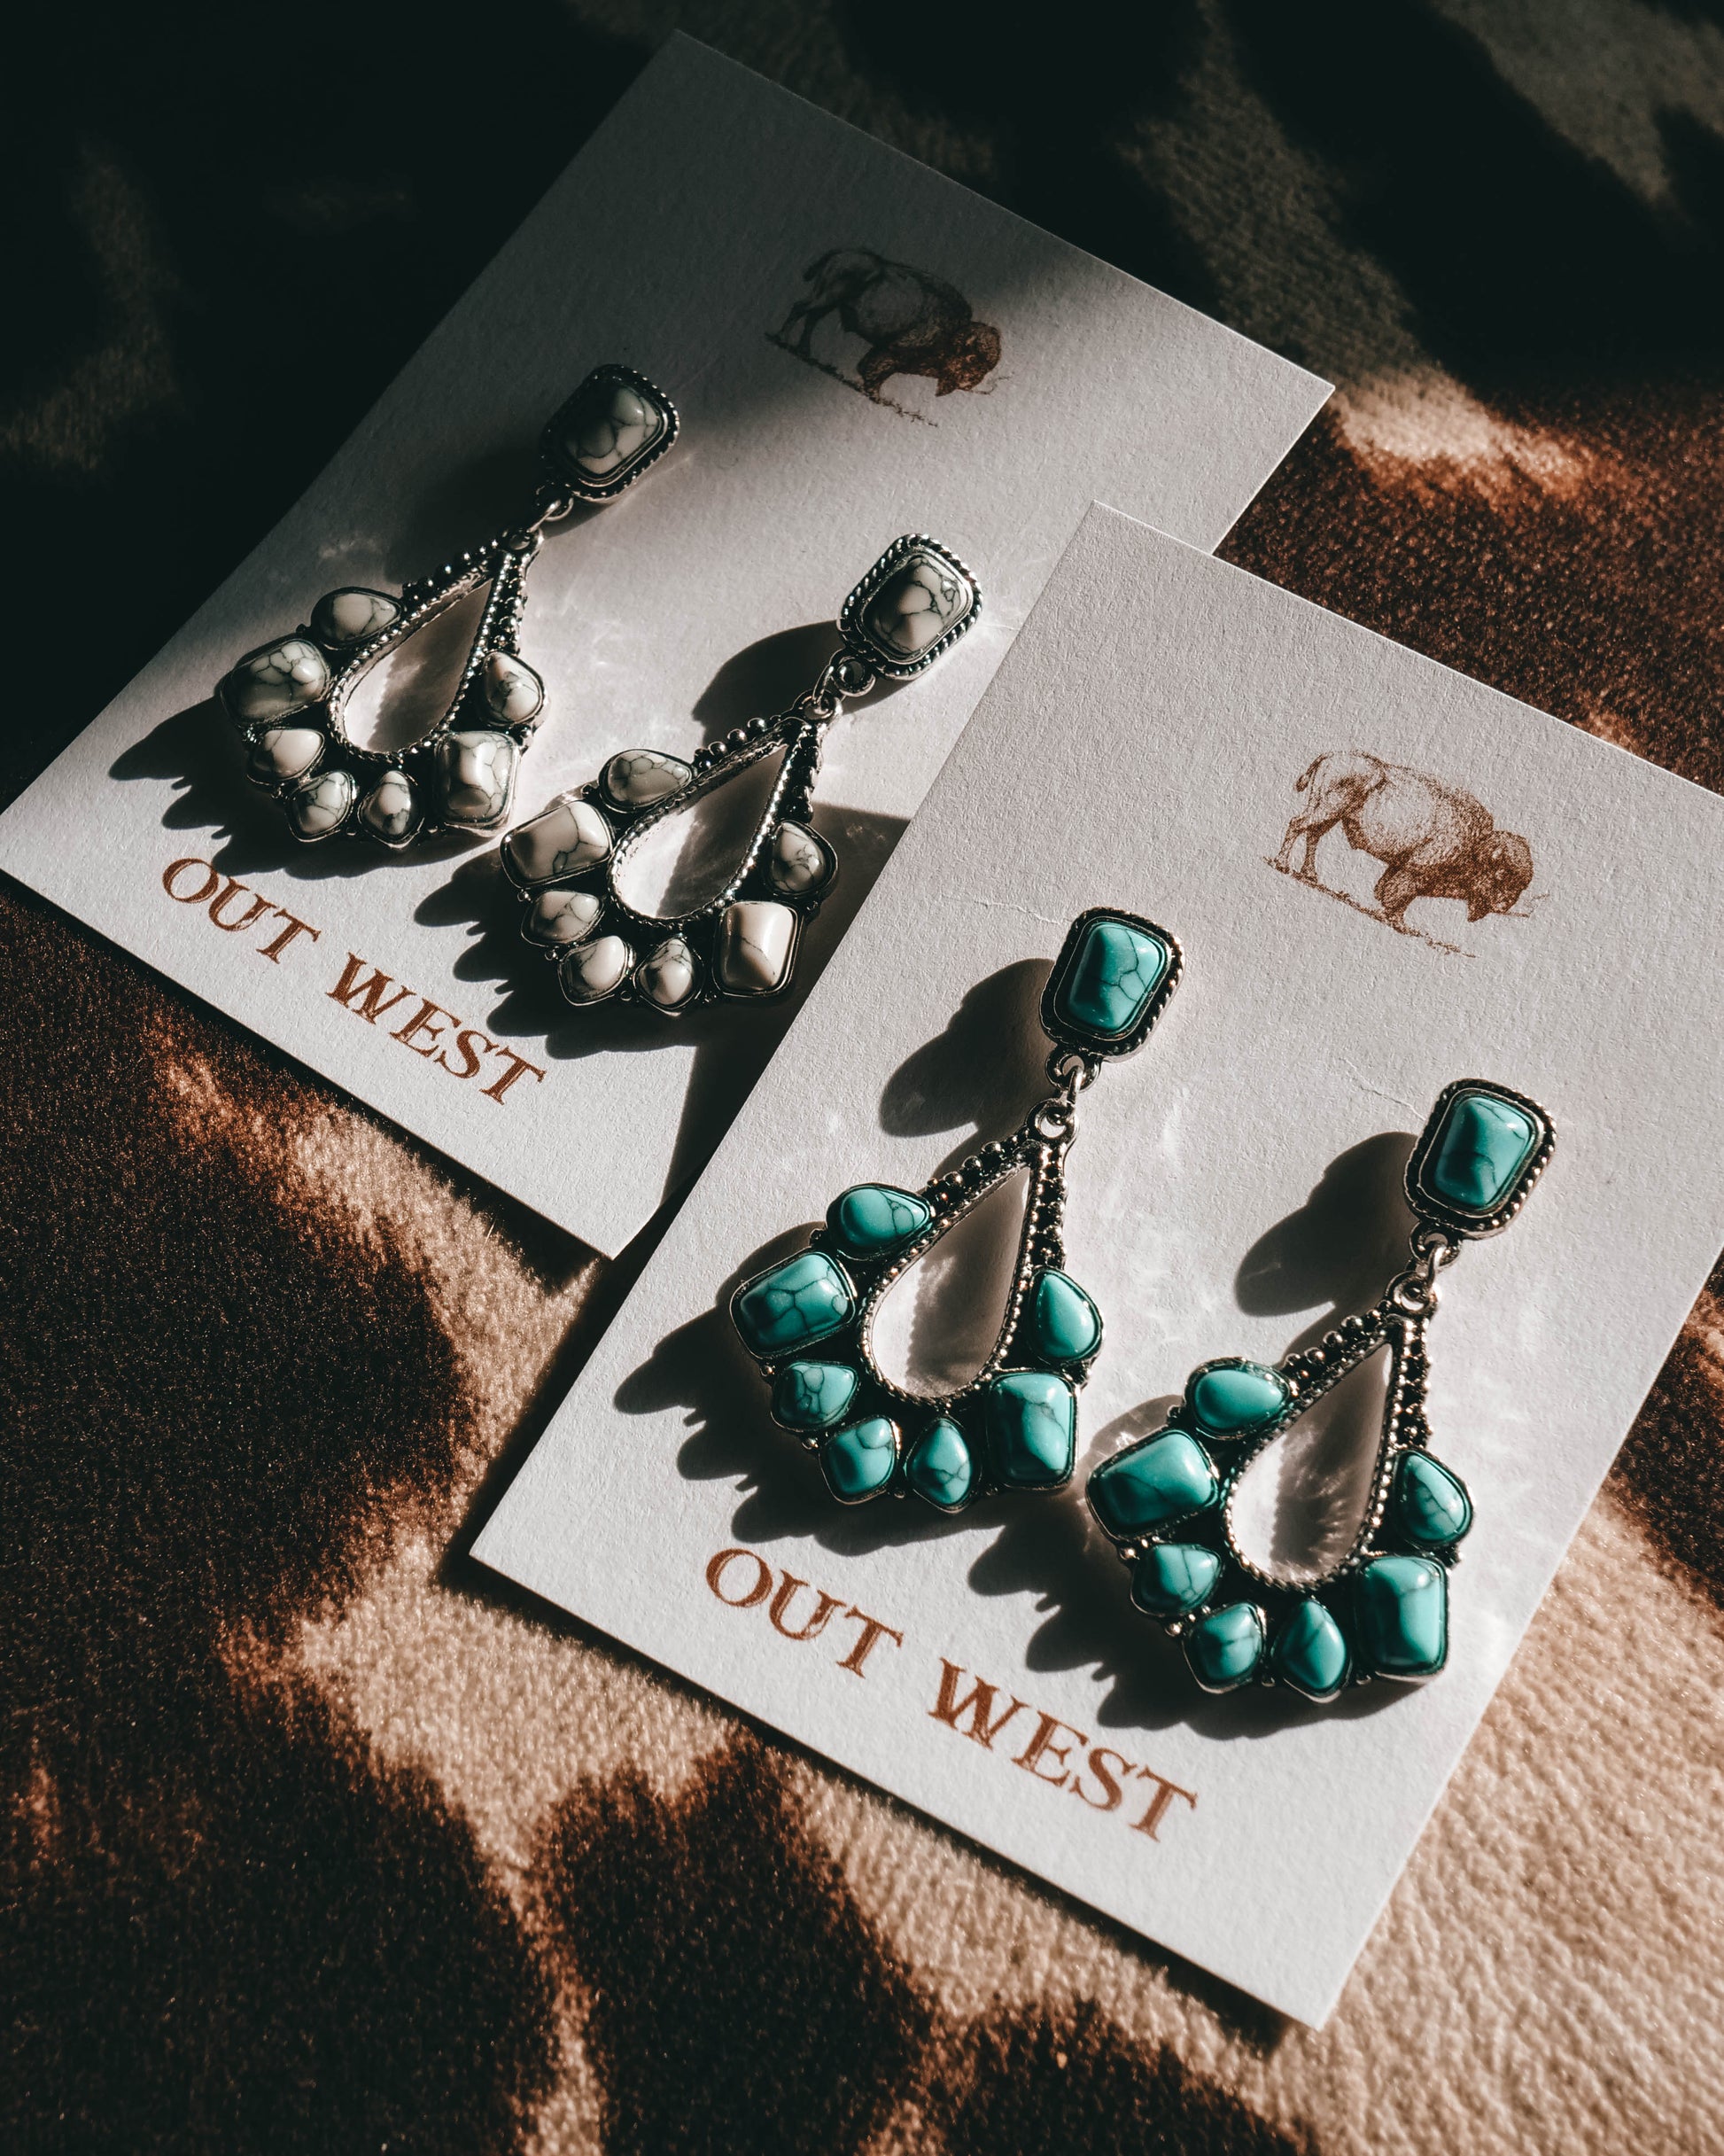 Out West  Rock n' Roll class earings | white western jewelery cowgirl earrings